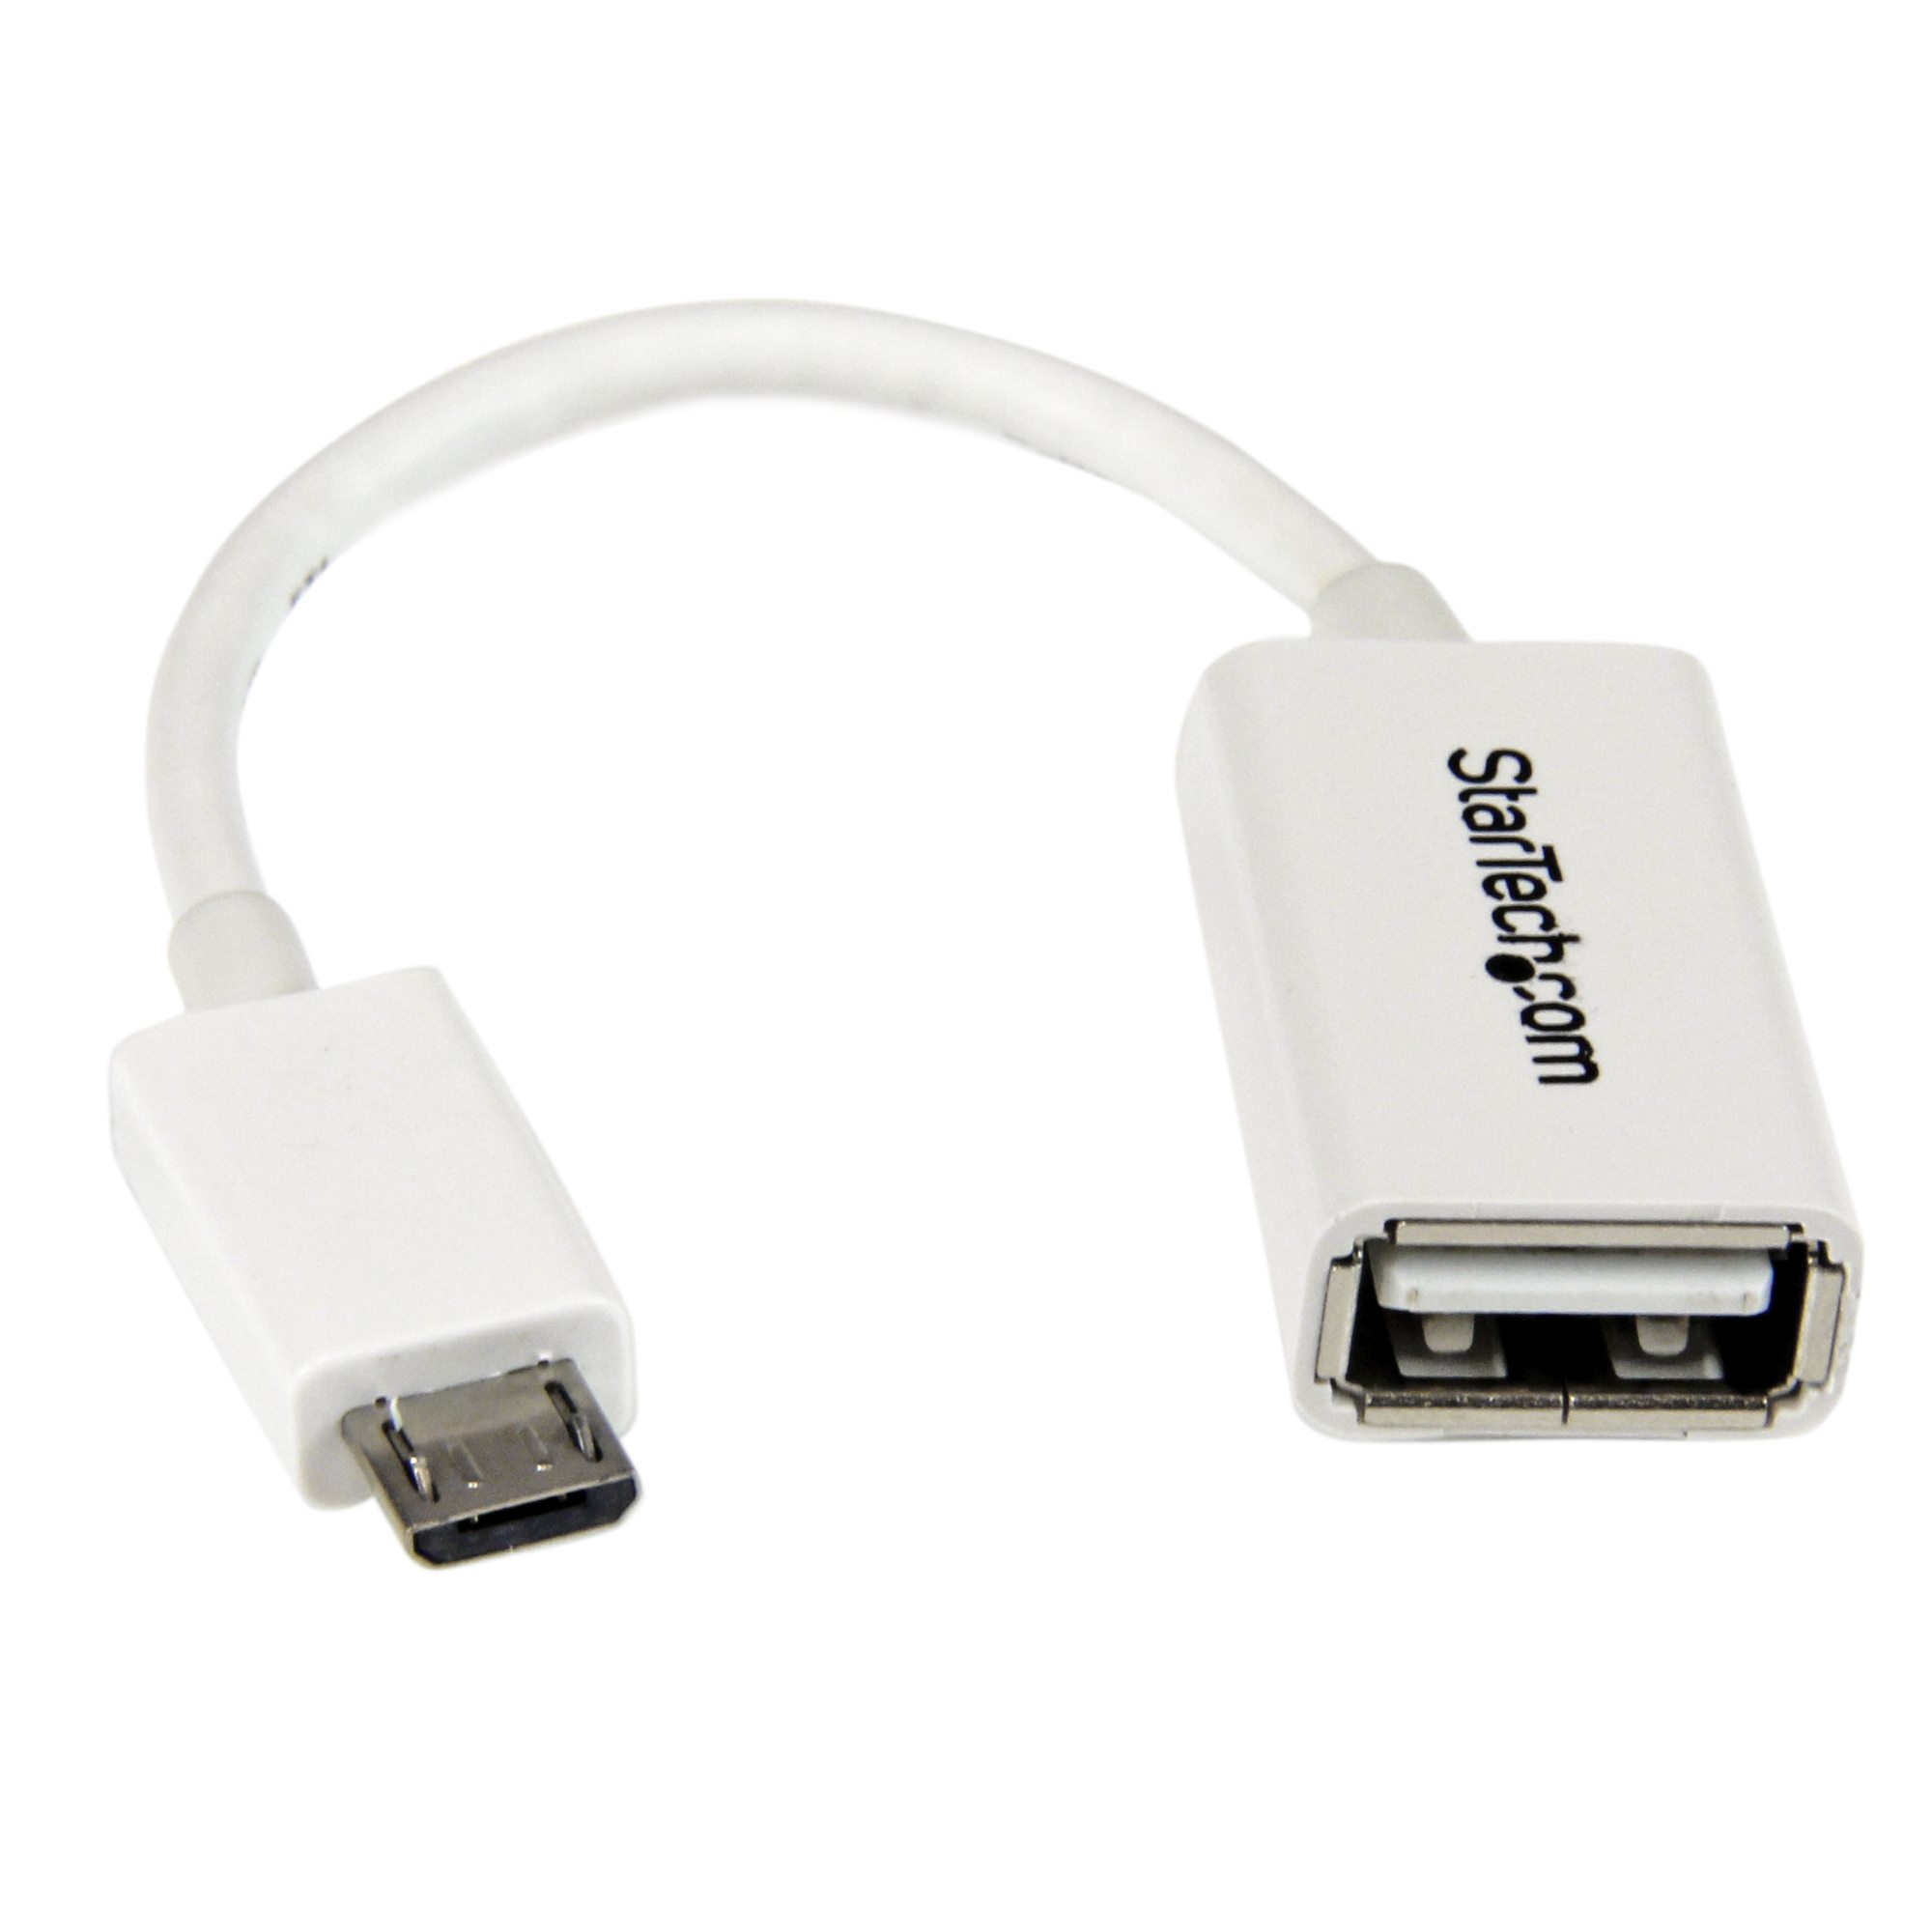 Adaptateur OTG Micro USB vers USB 12 cm - Adaptateurs USB (USB 2.0